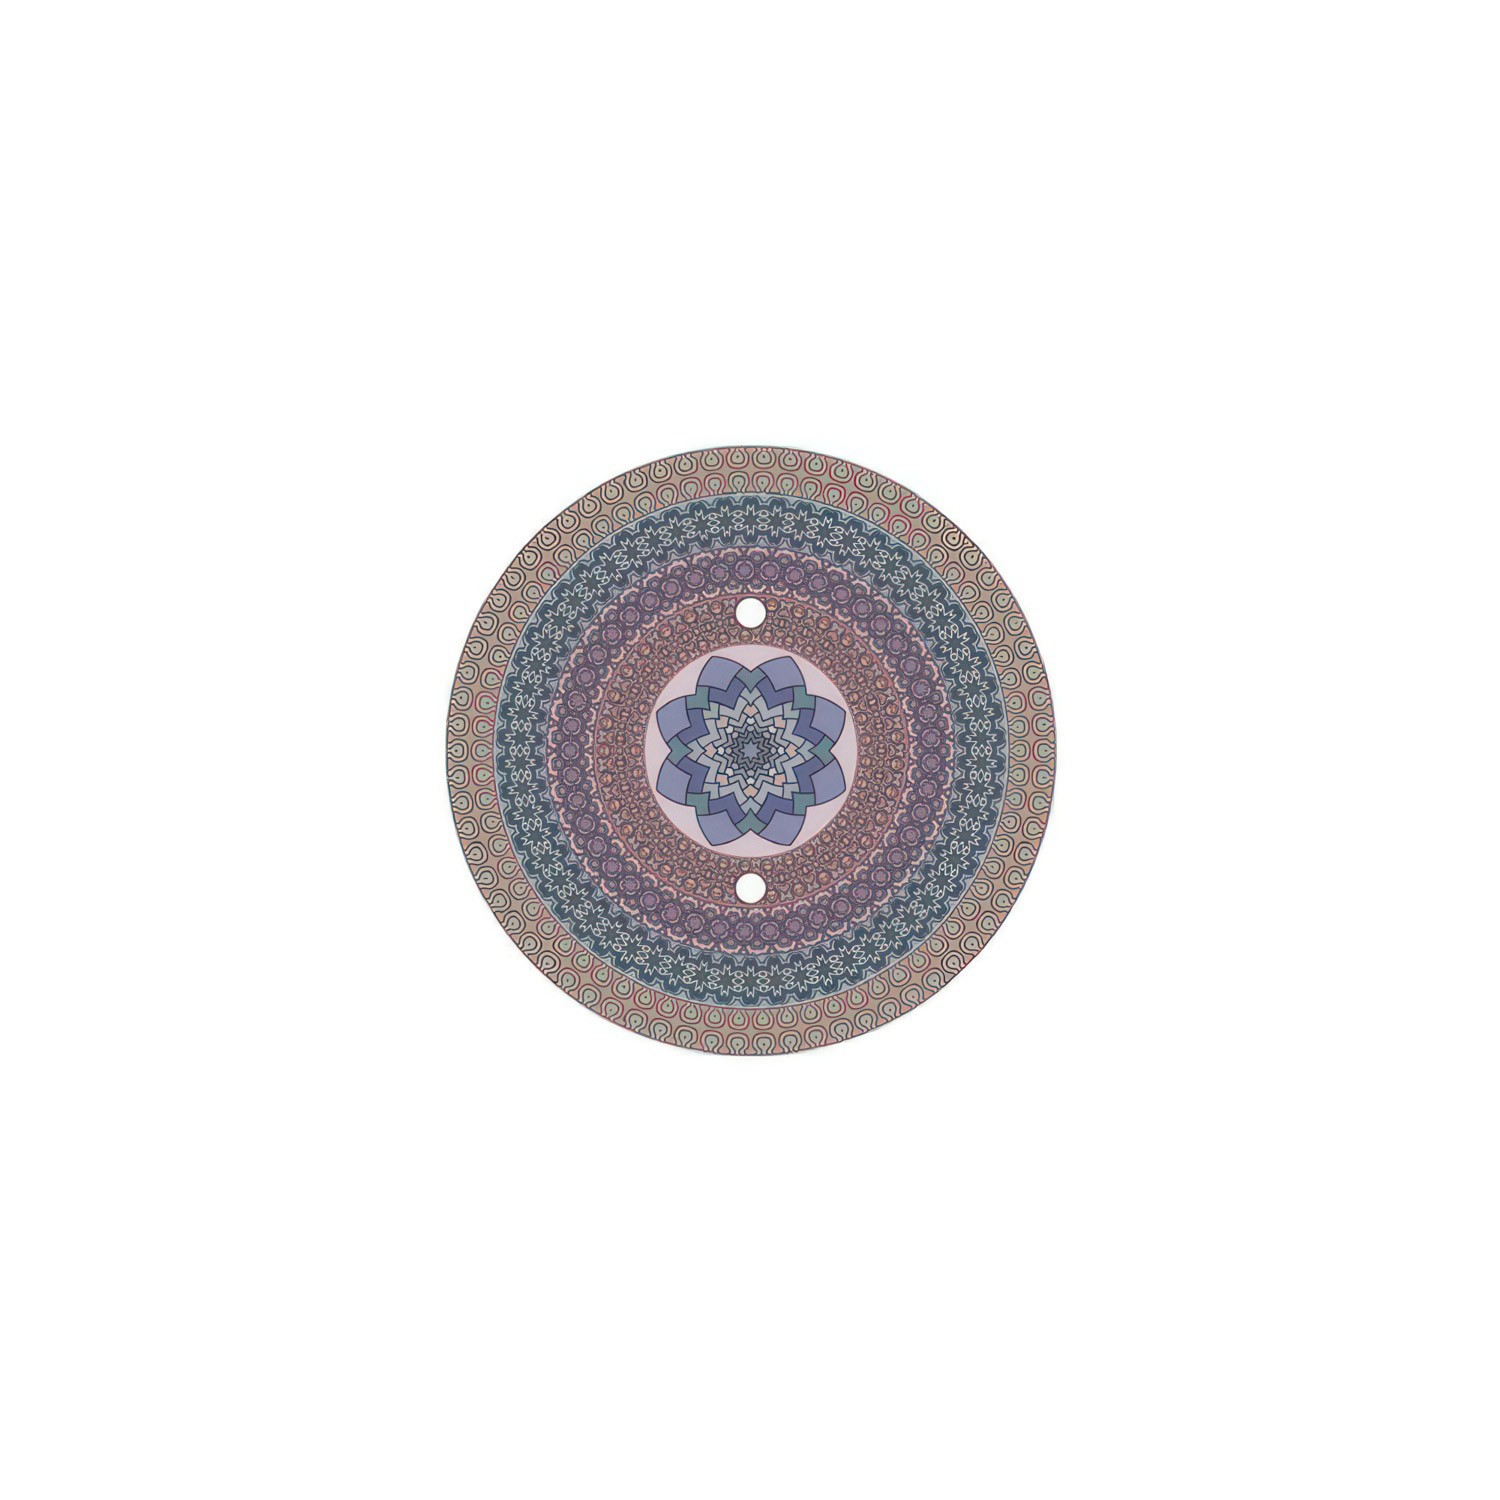 Rundes 2-Loch und 4 Seitenlöchern Lampenbaldachin, Rose-One-Abdeckung, 200 mm Durchmesser - PROMO